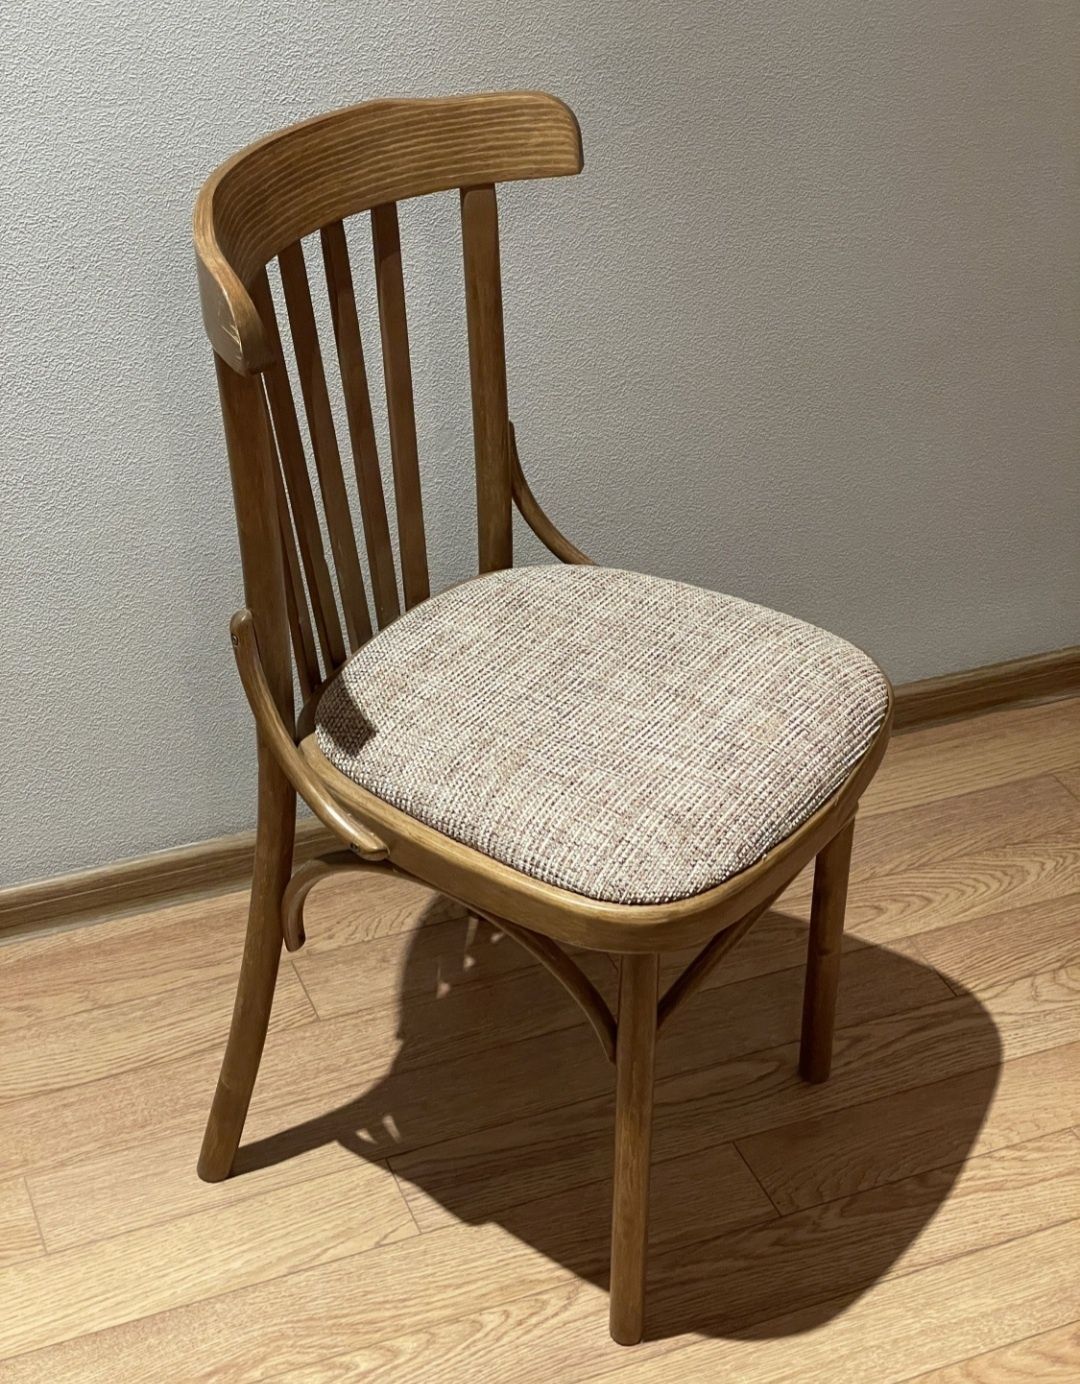 Продам ретро винтаж стулья кресло